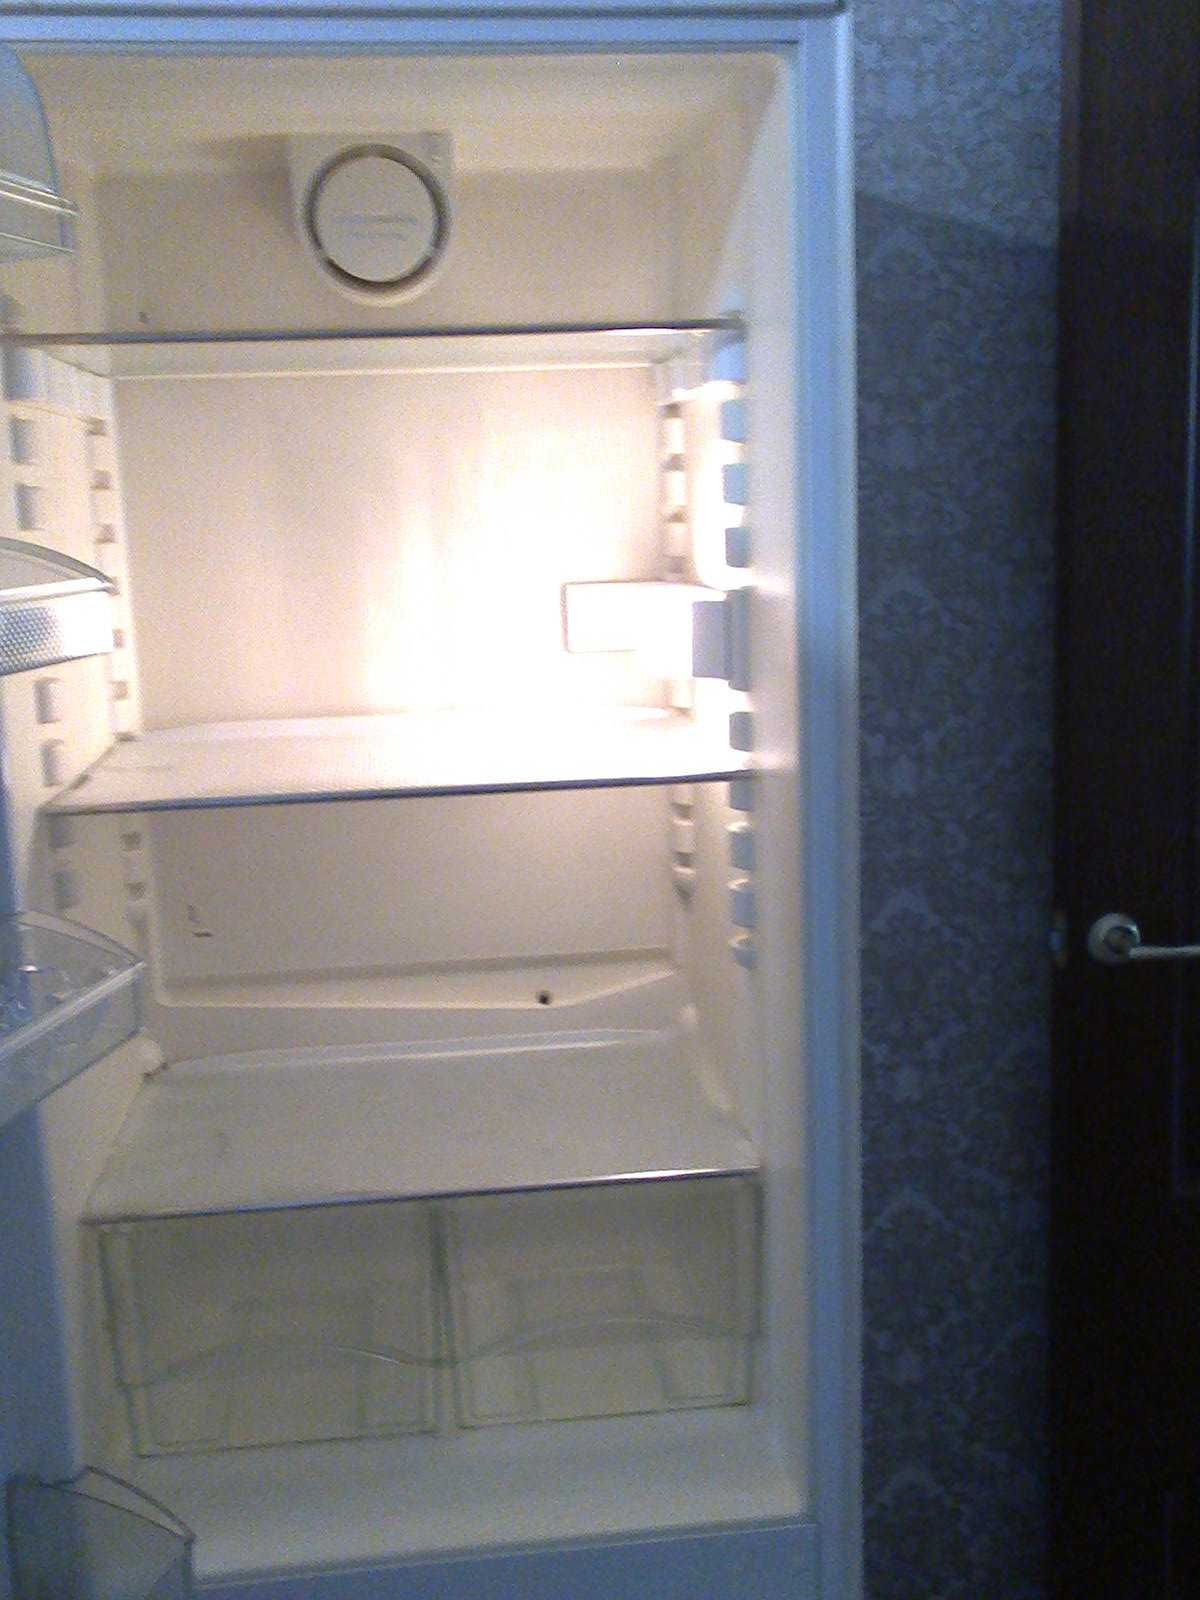 Срочно продам встраиваемый холодильник Либхер,  производство Германия